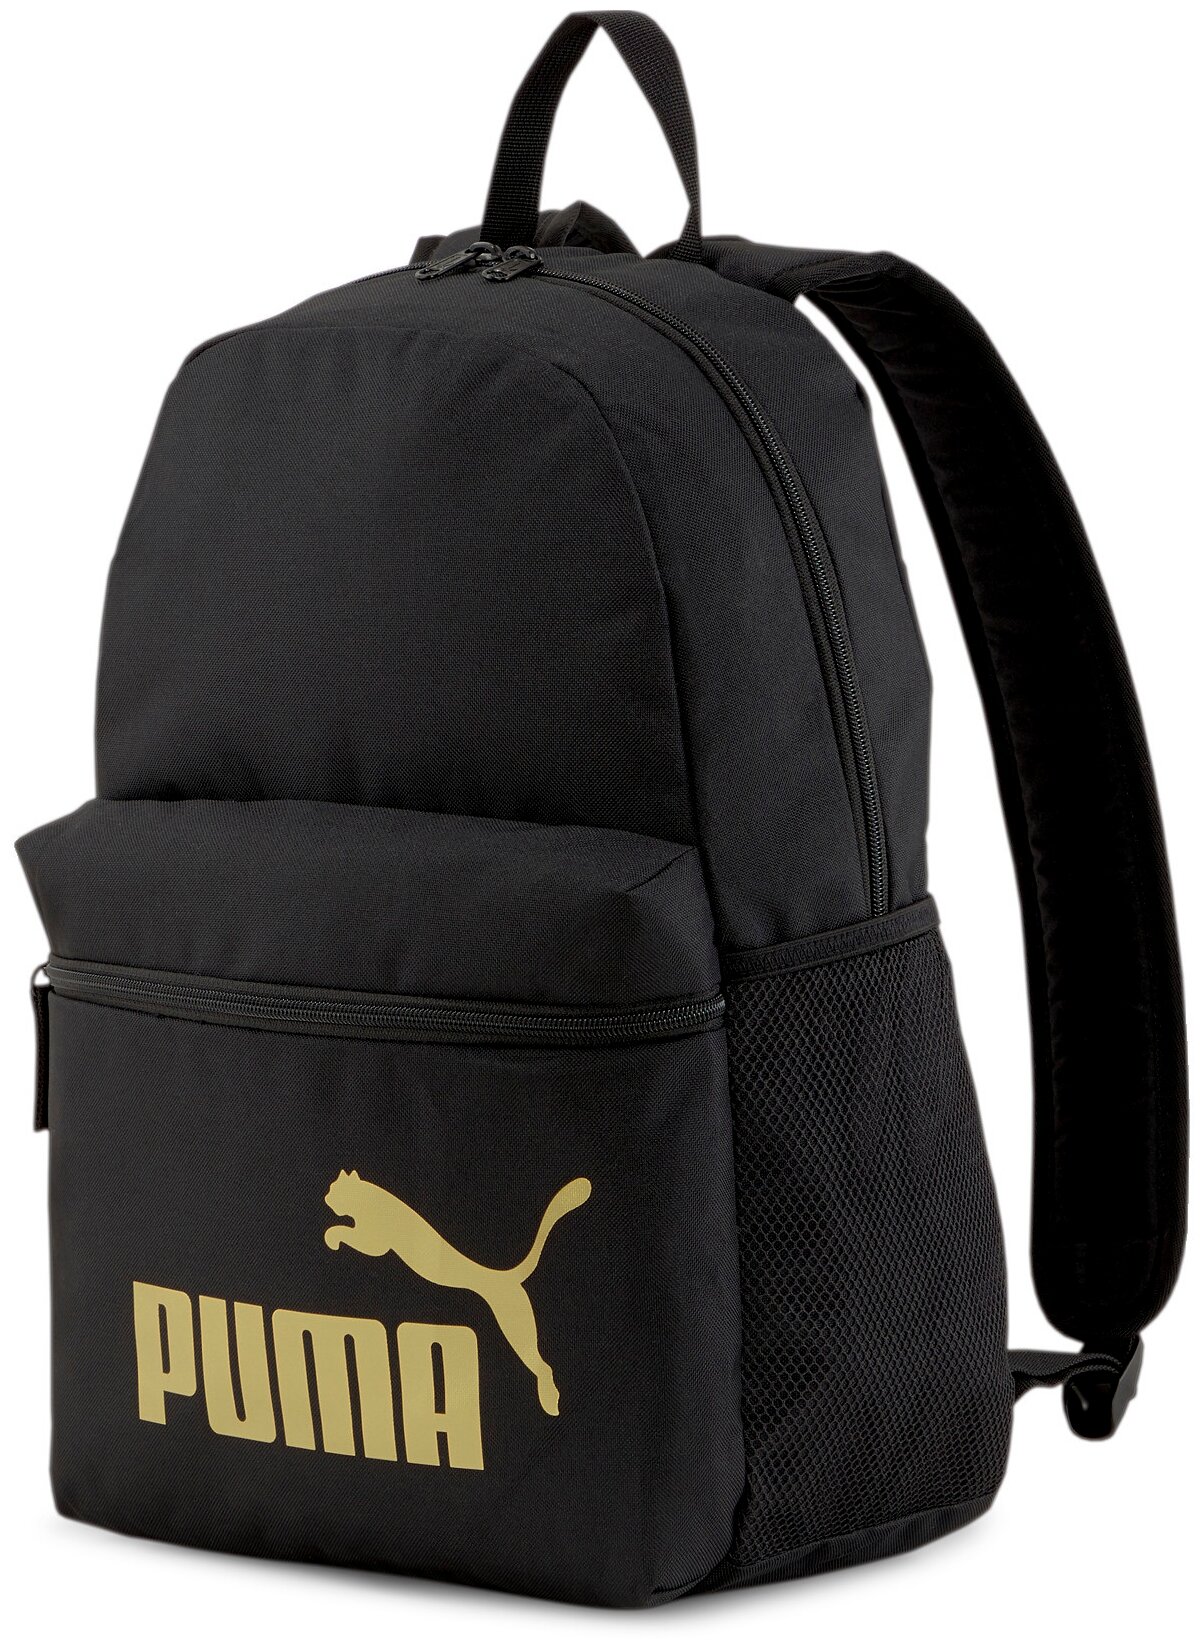 Мультиспортивный рюкзак PUMA Phase, Black-Golden logo